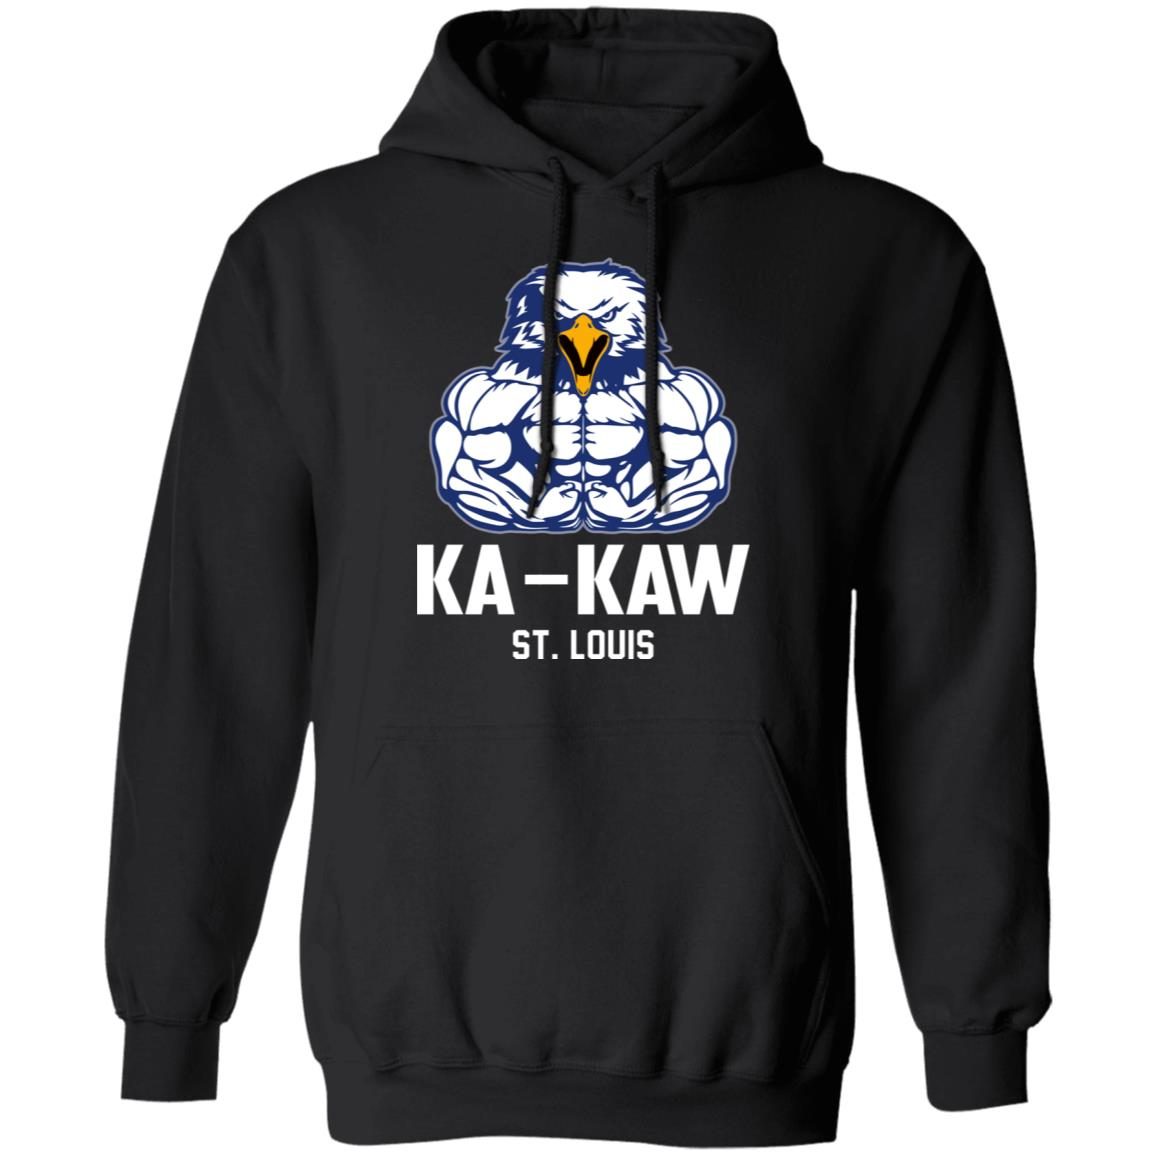 Battlehawks Football St Louis Ka-Kaw Shirt